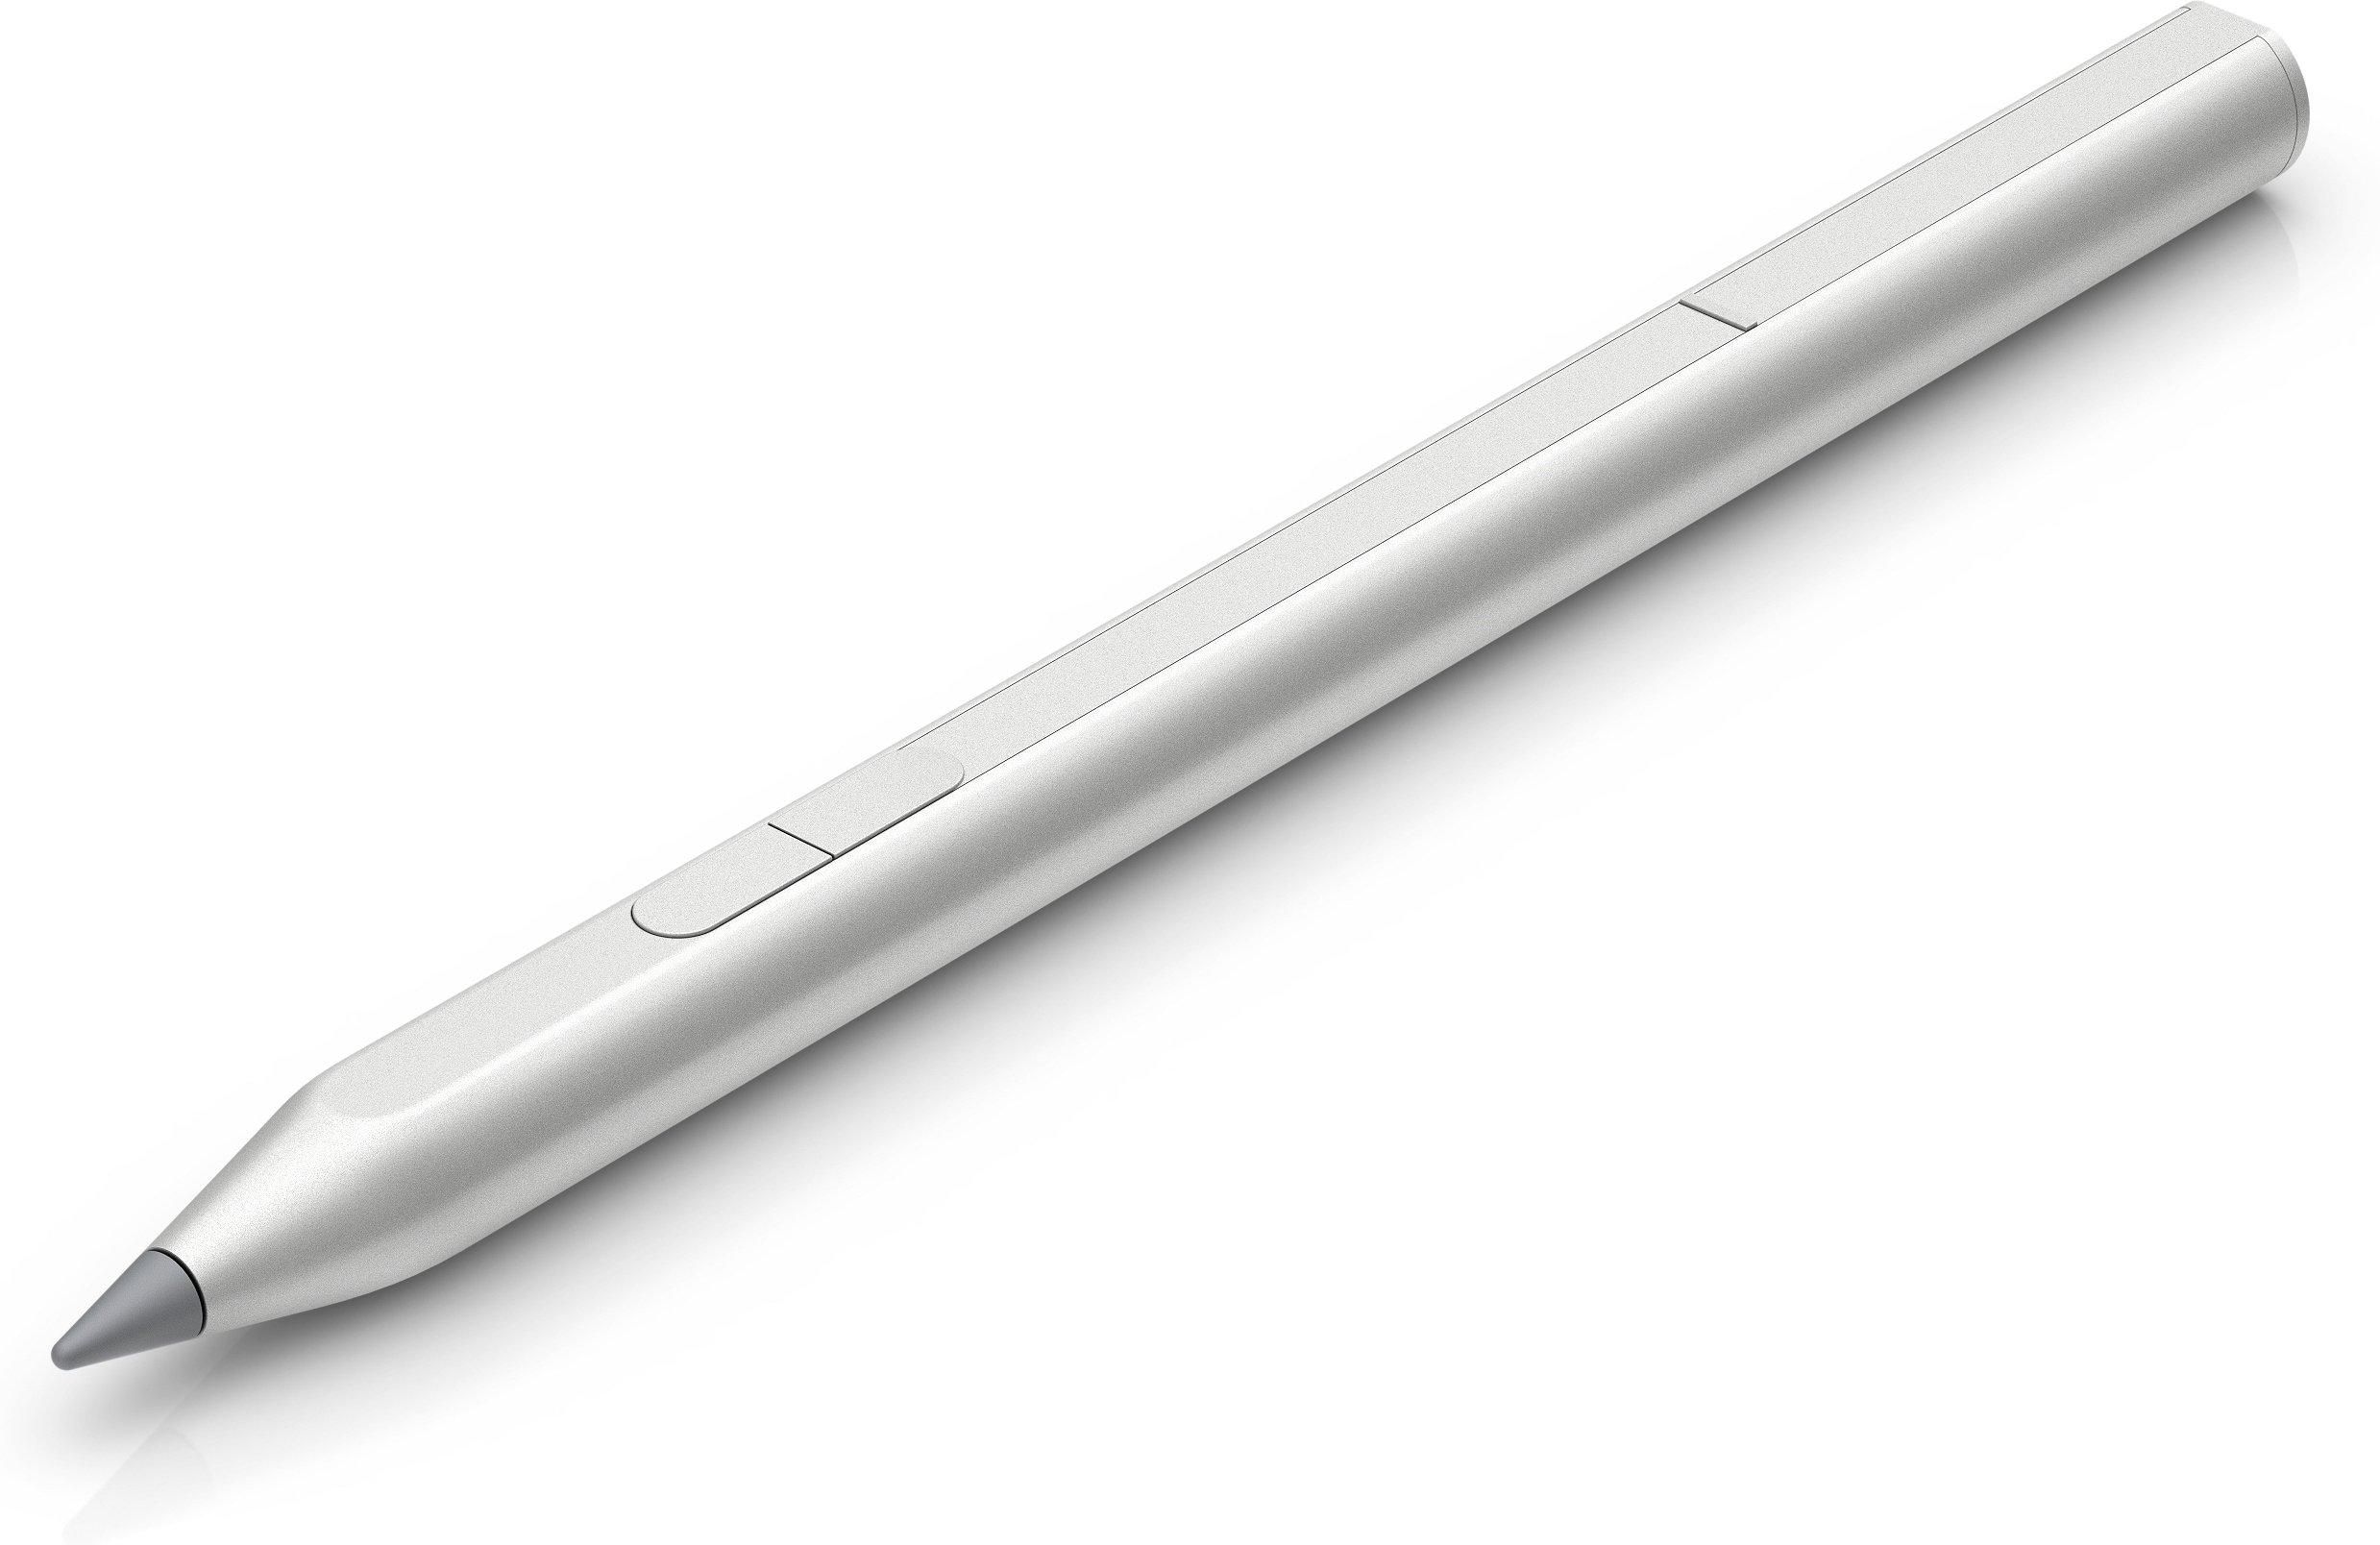 Hewlett-Packard  Rechargeable MPP 2.0 Tilt Pen (Silver) 